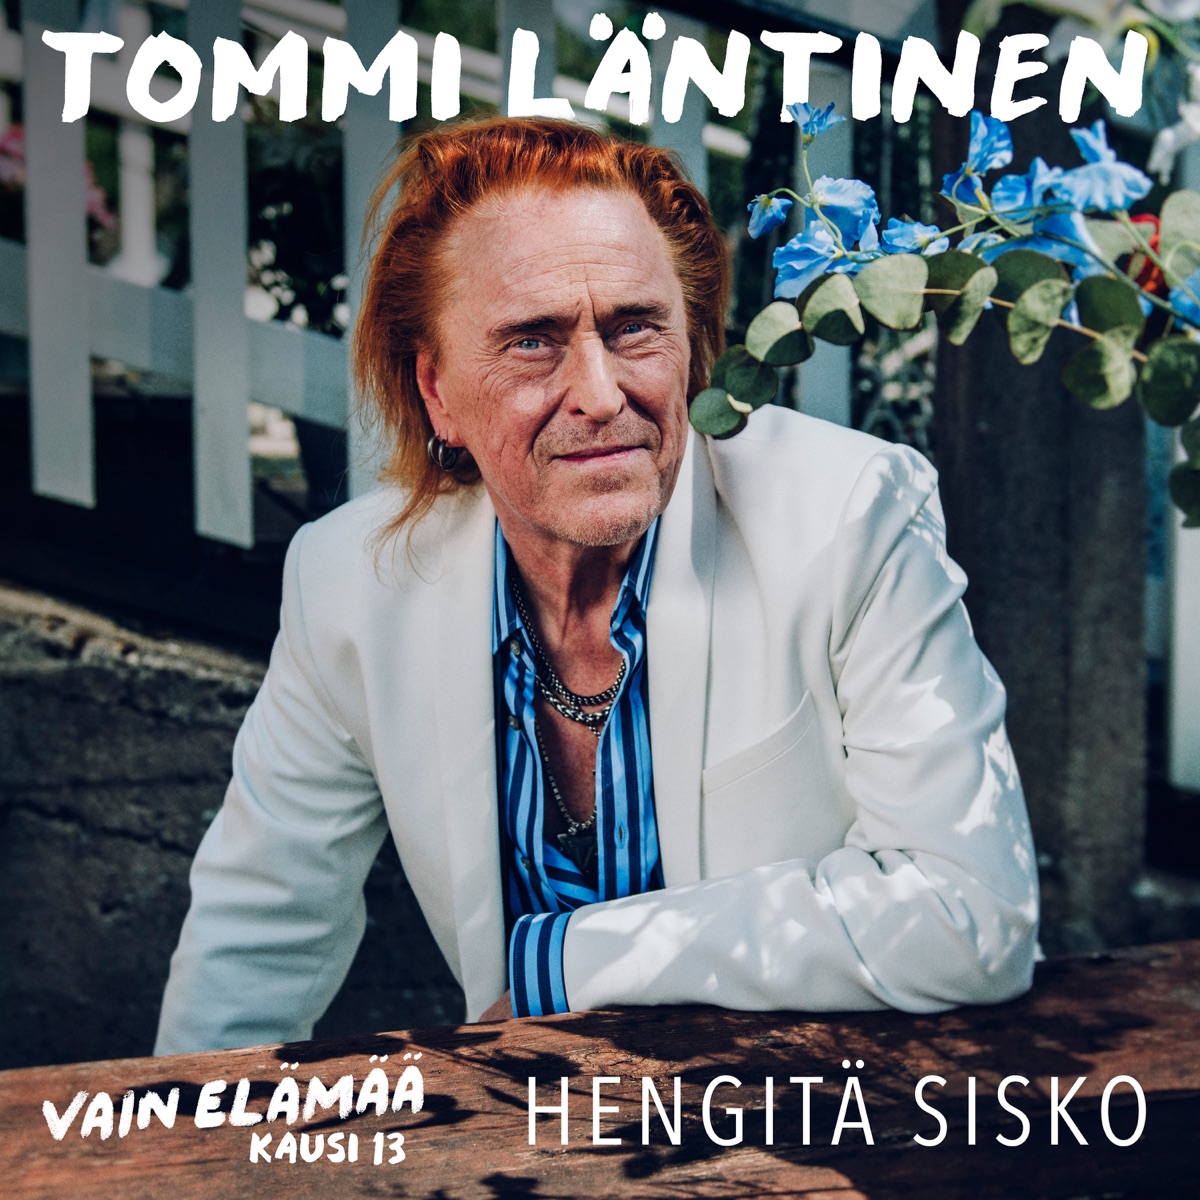 Tommi Läntinen: Collections by Tommi Läntinen on Apple Music